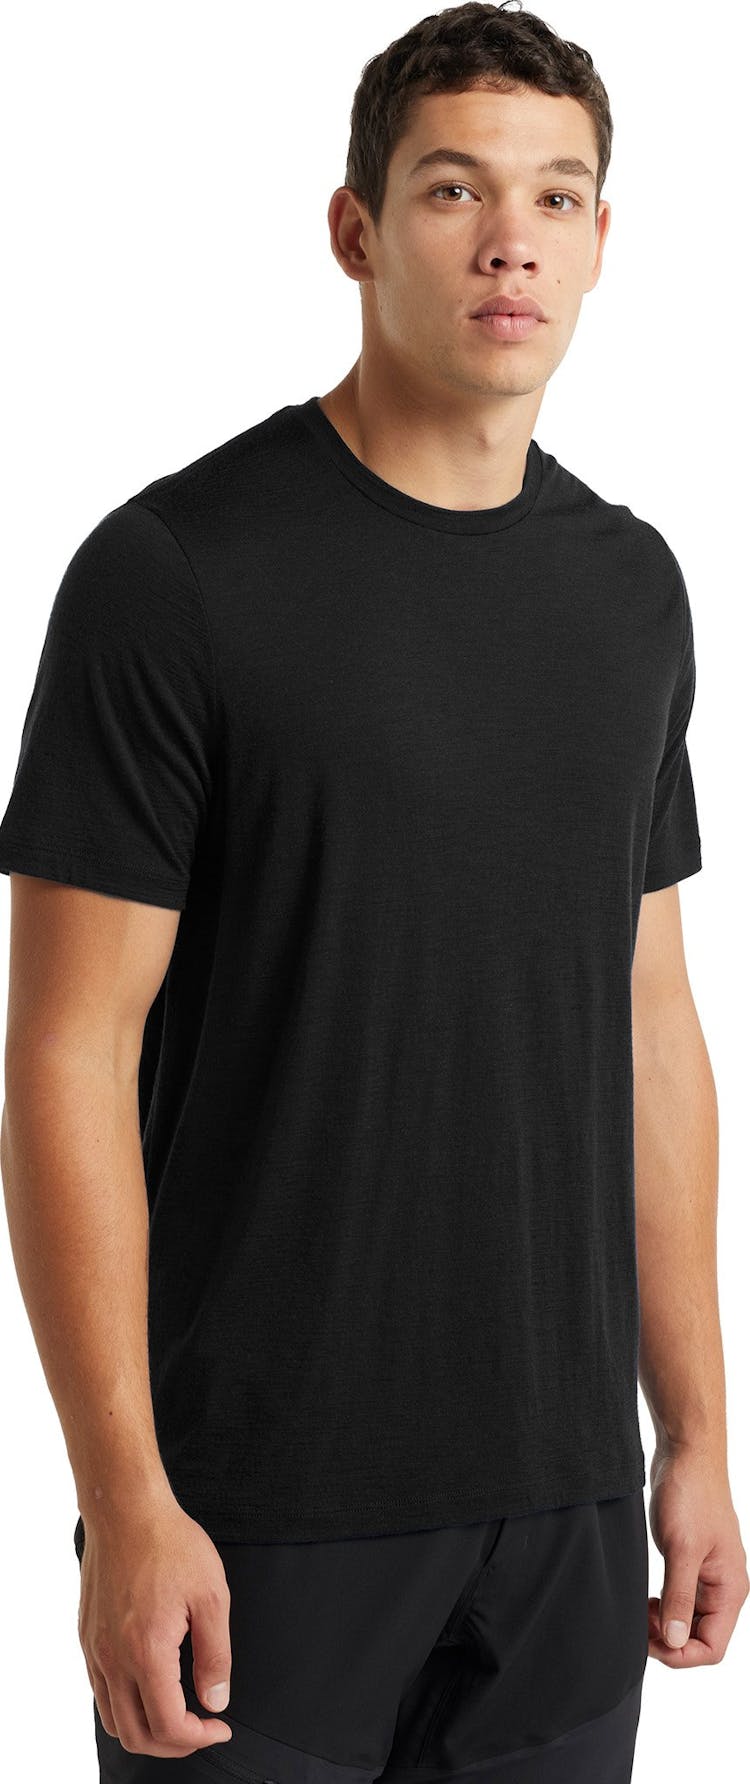 Numéro de l'image de la galerie de produits 3 pour le produit T-shirt à manches courtes Tech Lite II - Homme